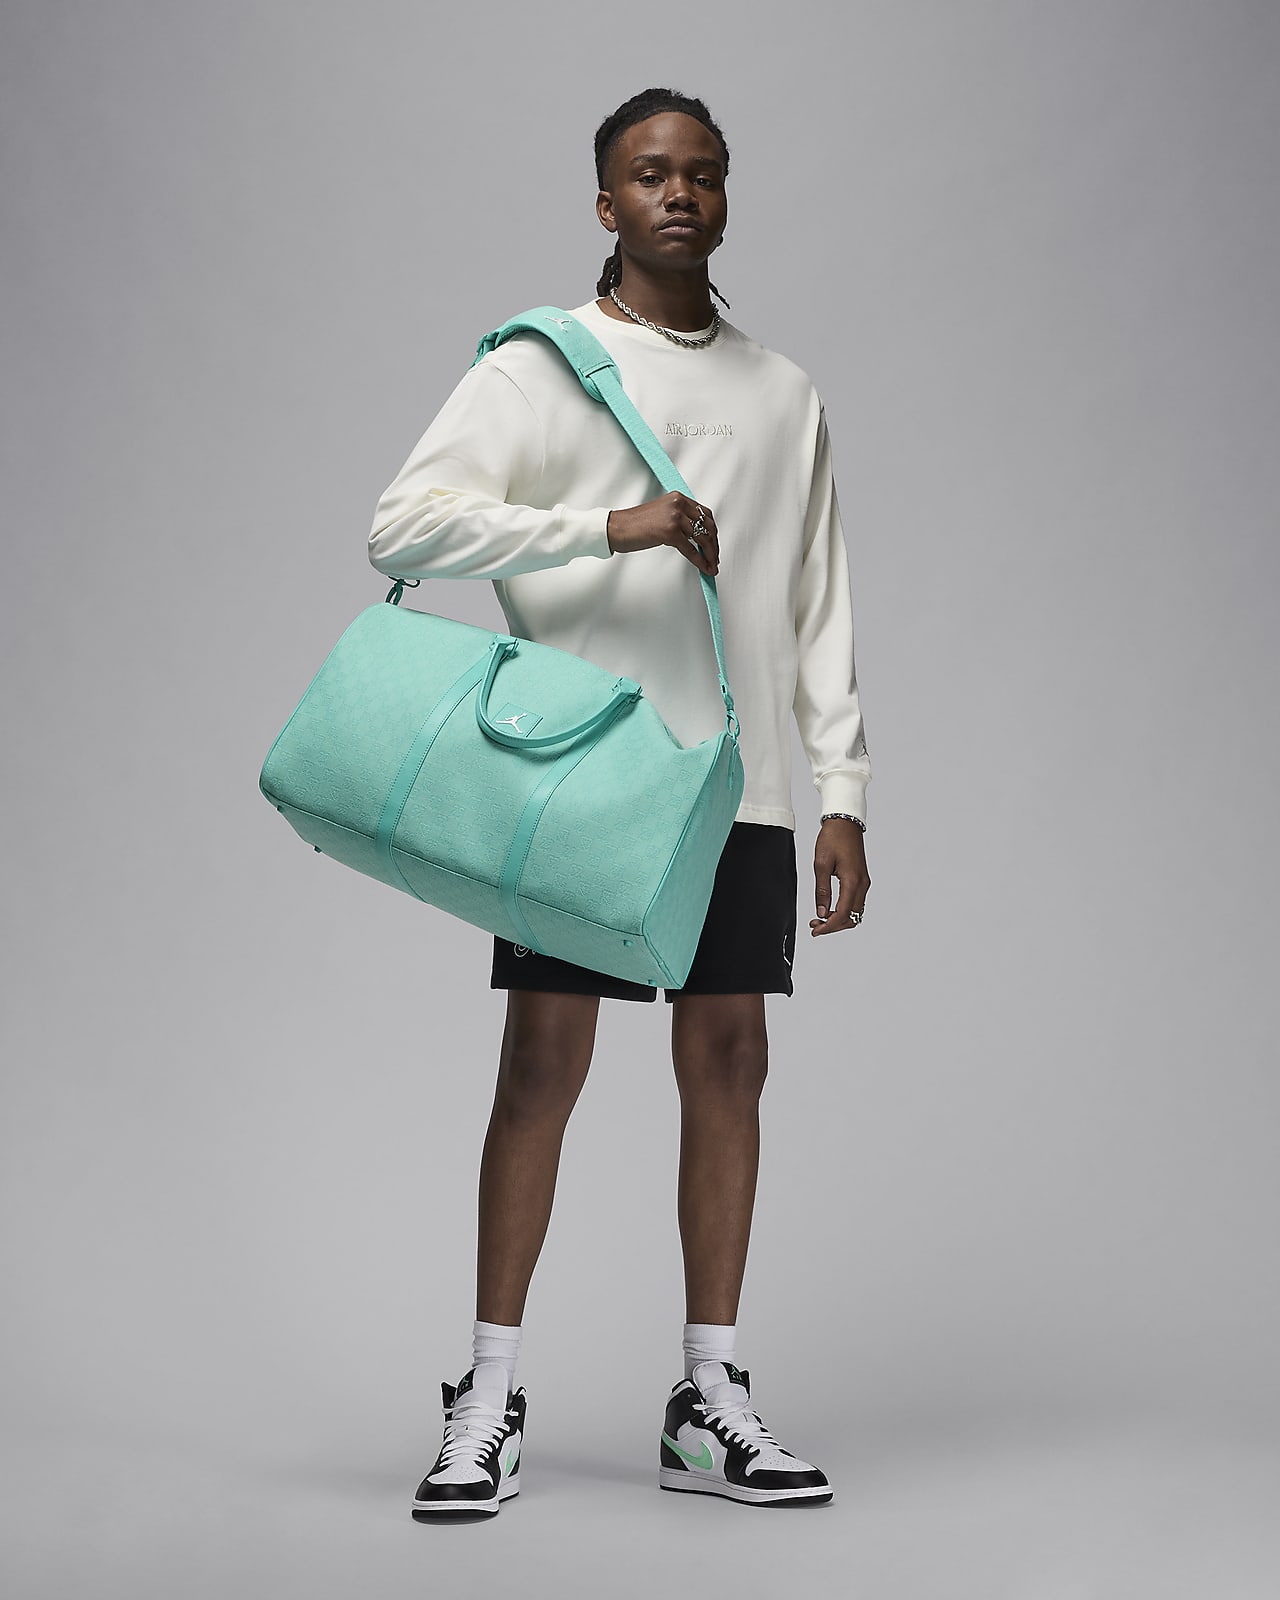 安い送料無料Nike Jordan Brand Monogram Duffle Bag バッグ